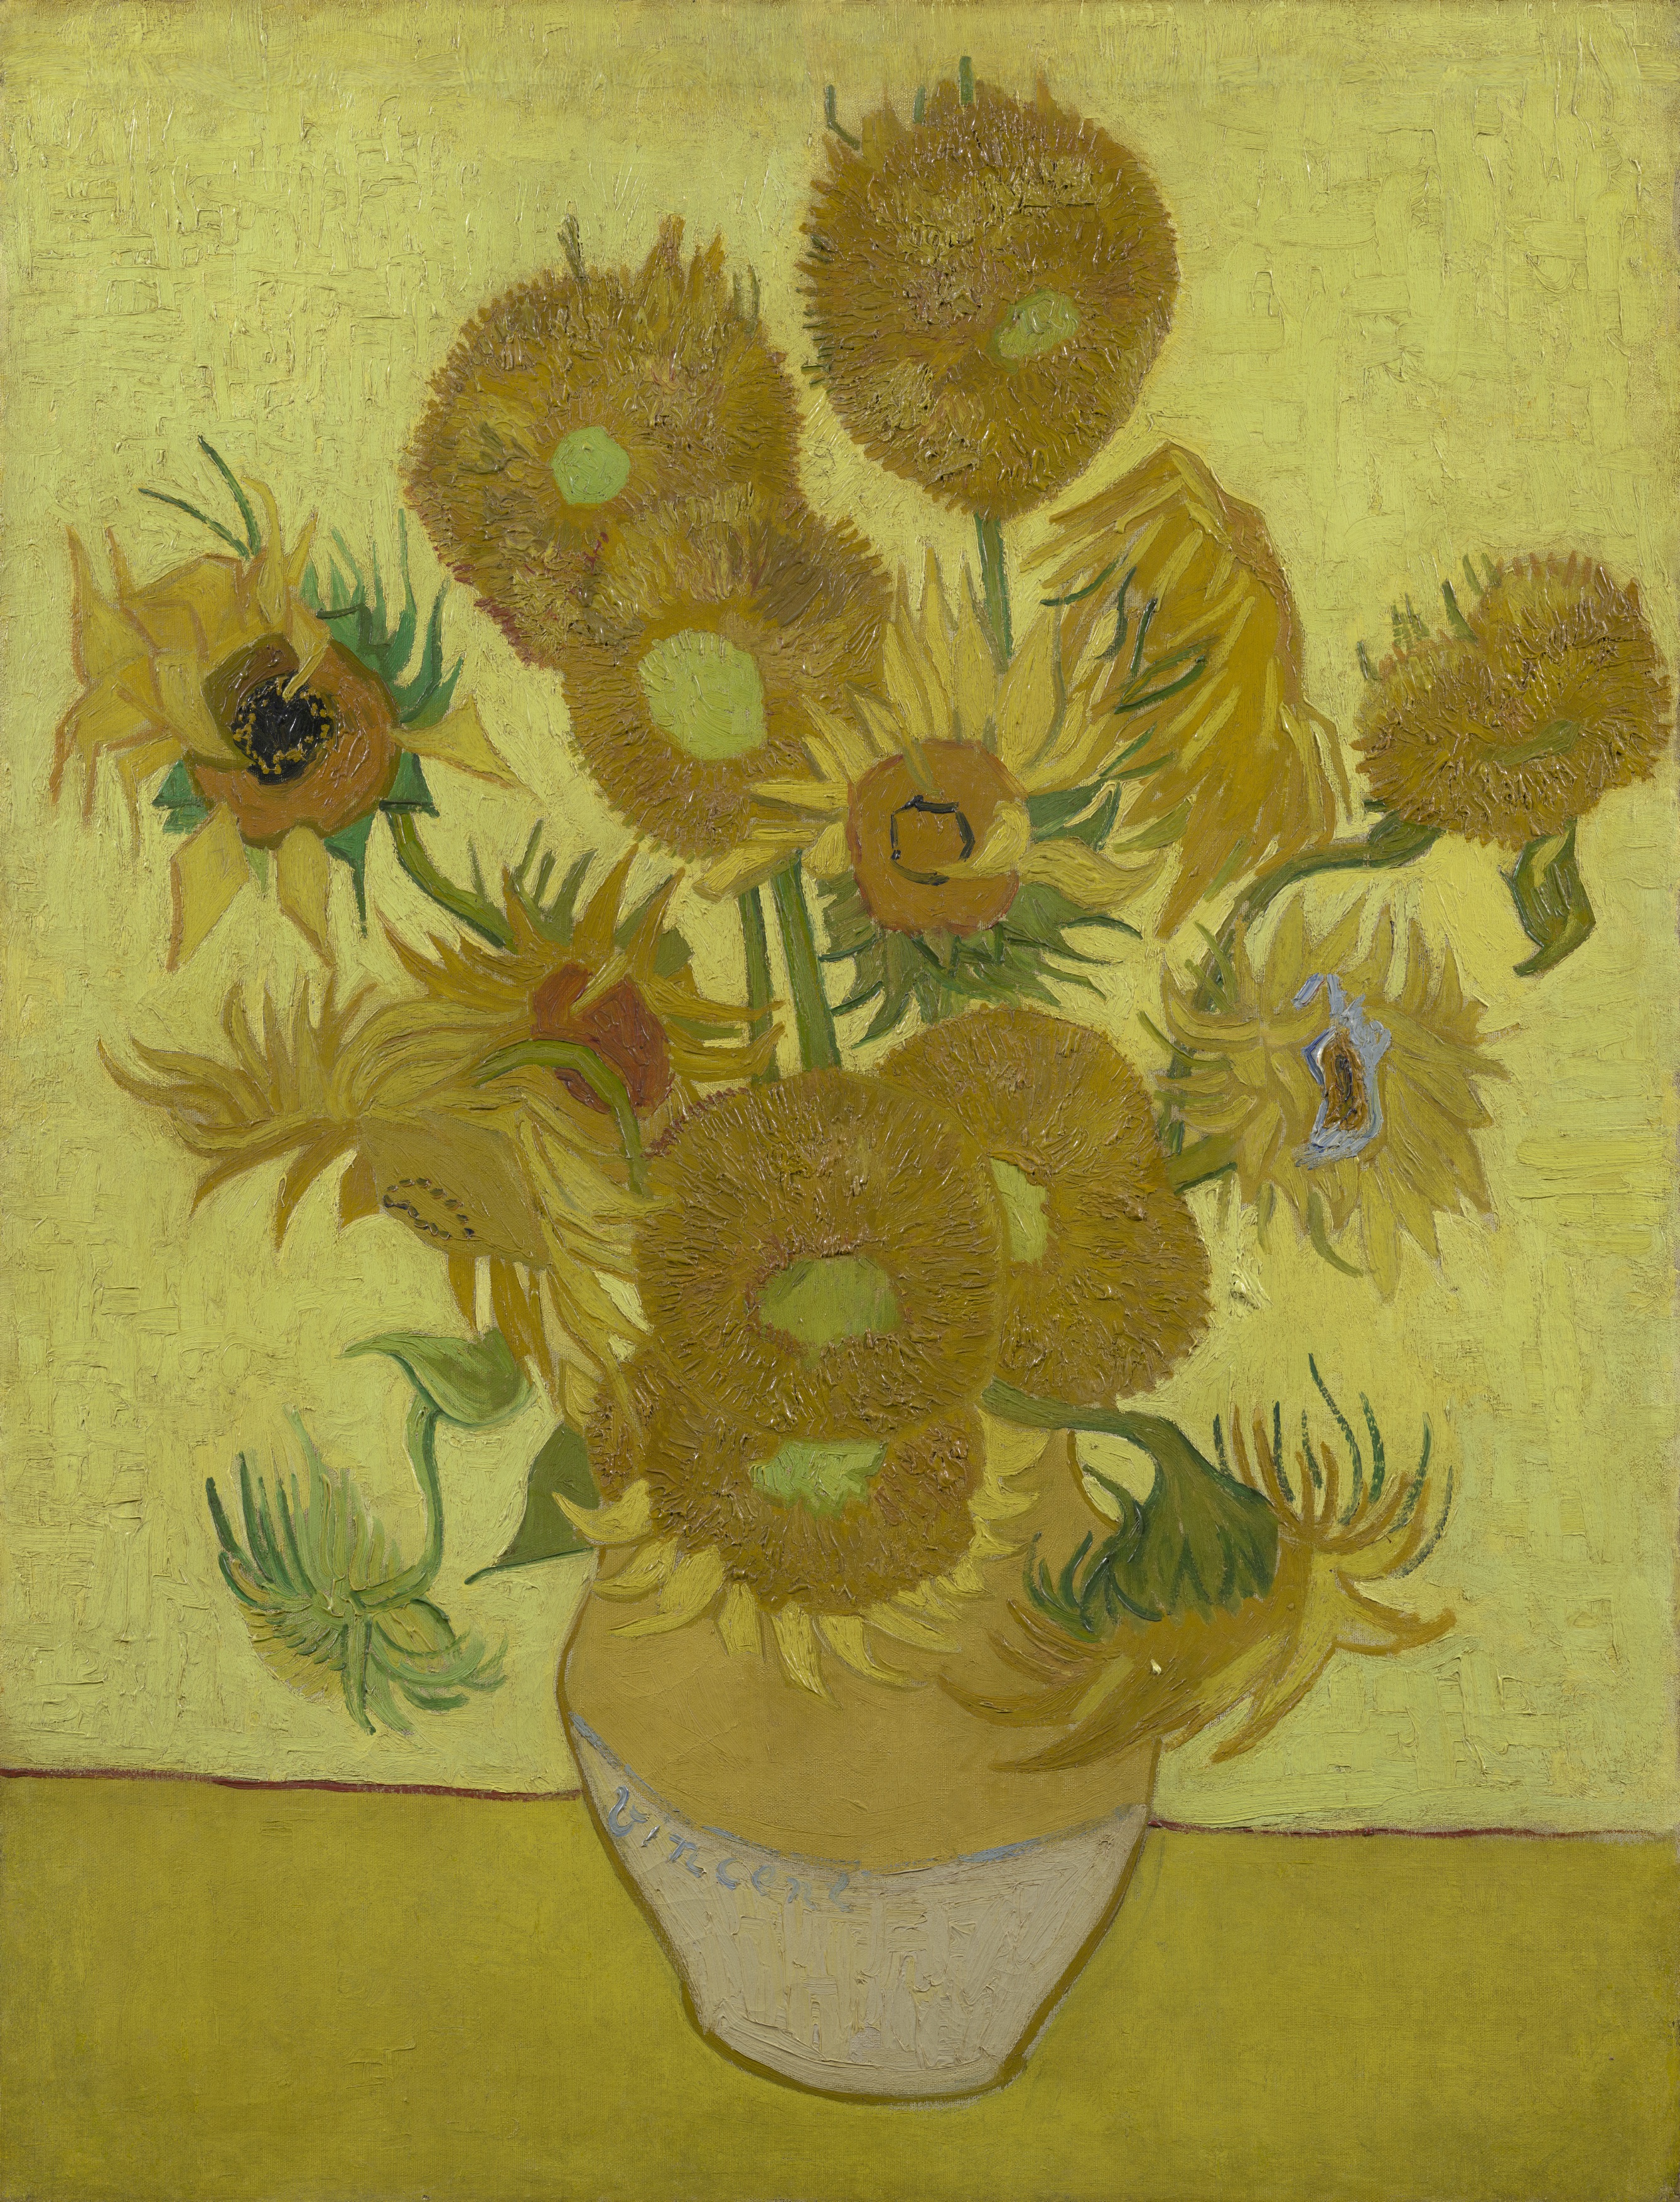 Słoneczniki by Vincent van Gogh - styczeń 1889 - 95 cm x 73 cm 